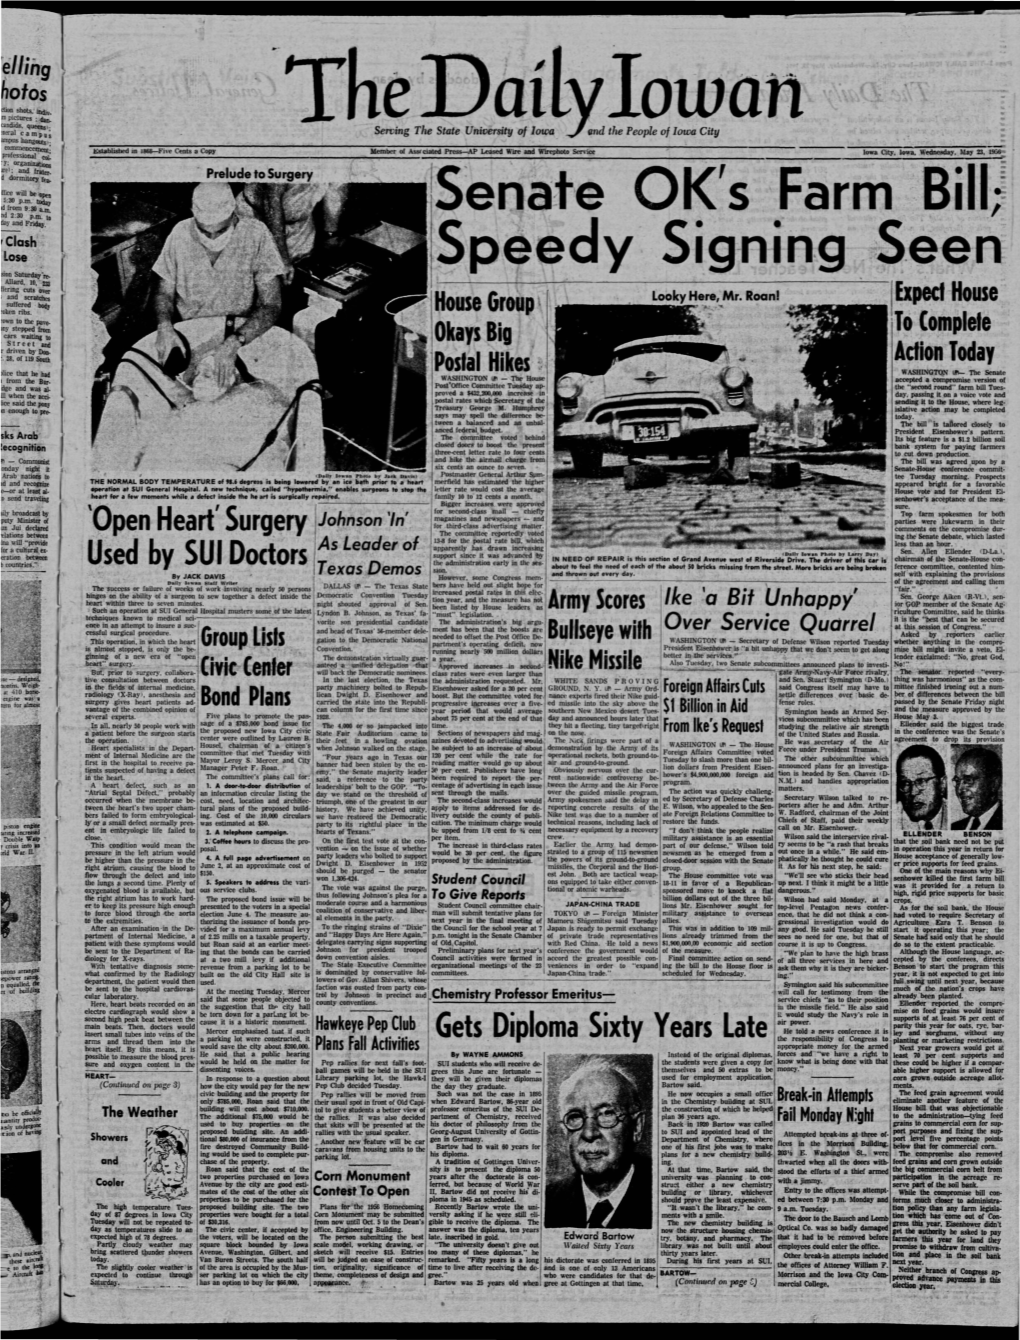 Daily Iowan (Iowa City, Iowa), 1956-05-23